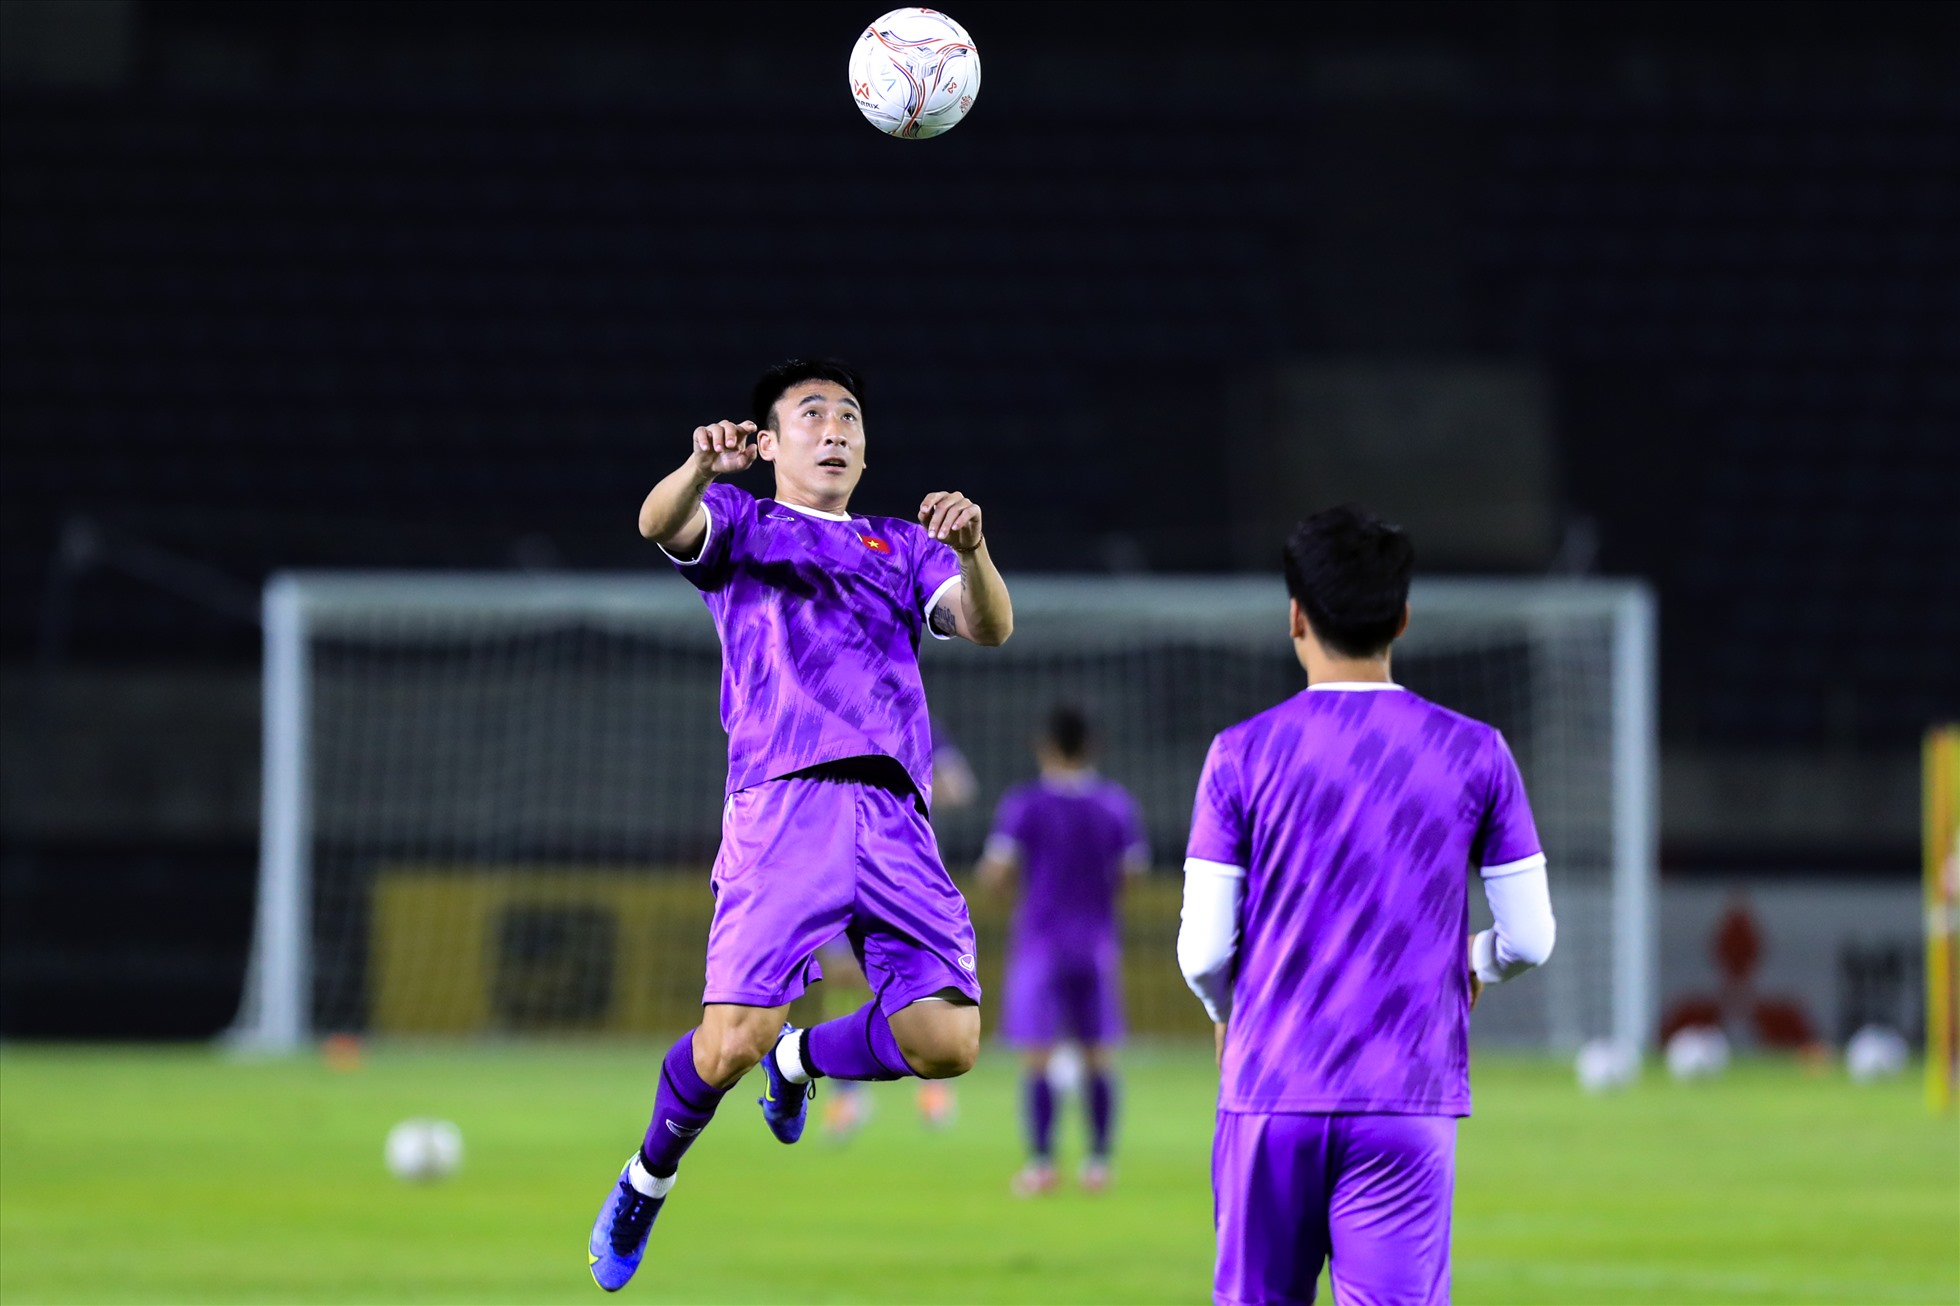 Sau phần khởi động nhẹ, các cầu thủ tuyển Việt Nam chia cặp chuyền bóng cho nhau để làm quen với mặt sân thi đấu.